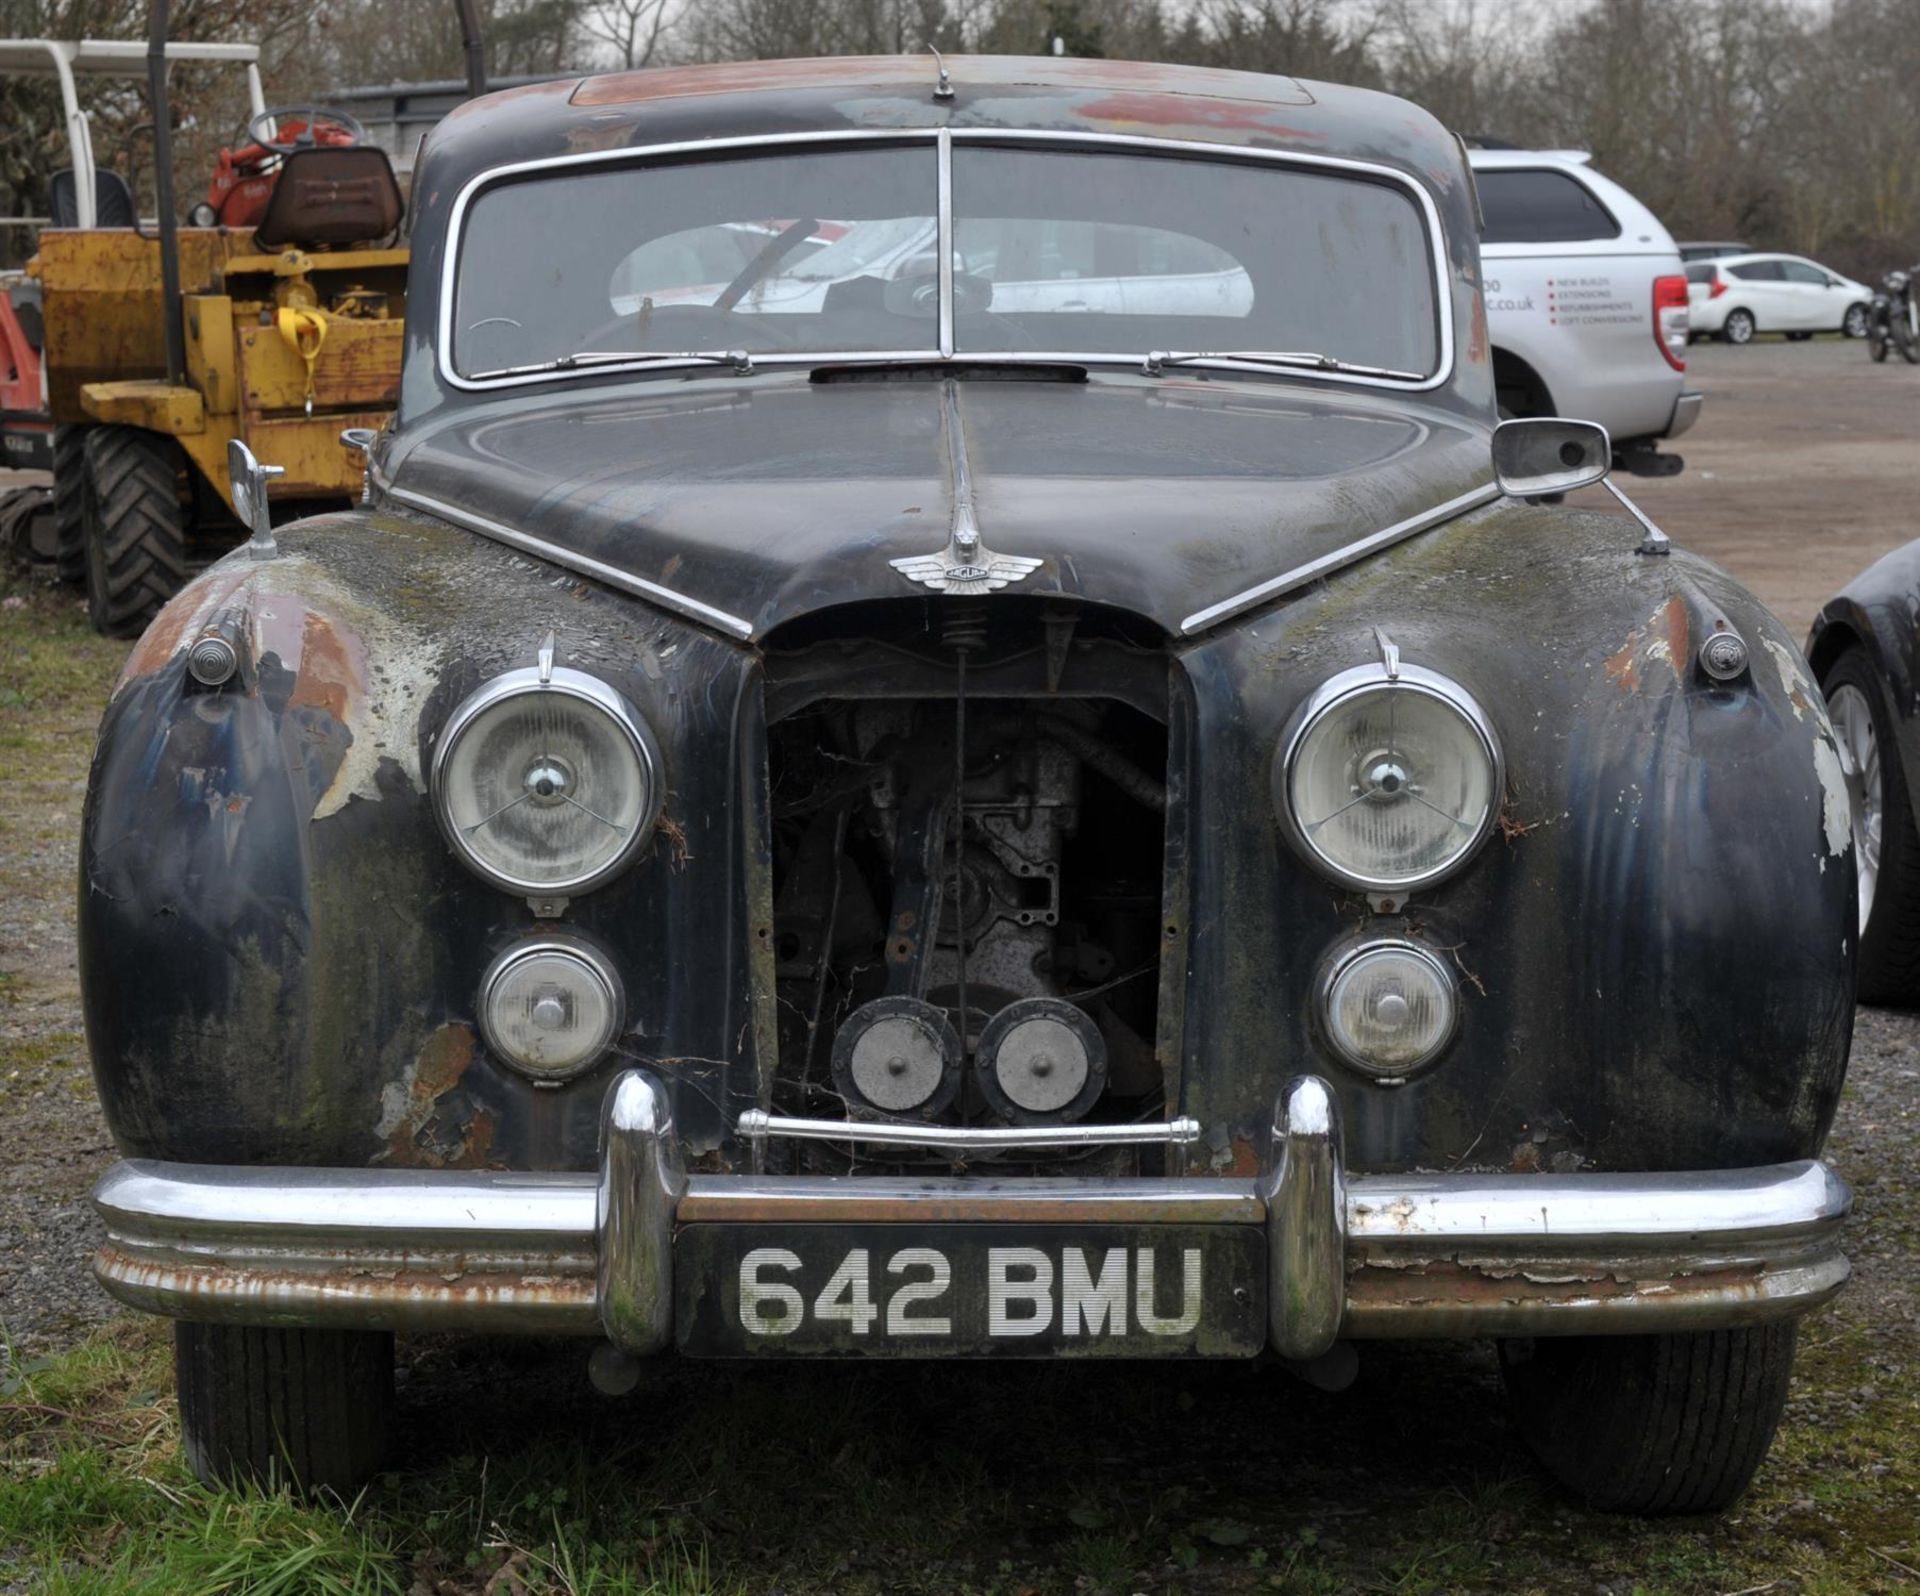 1954 black, Jaguar Mark VII 2-Axle-Rigid Body, for restoration. Registration Number 642 BMU. - Image 3 of 24